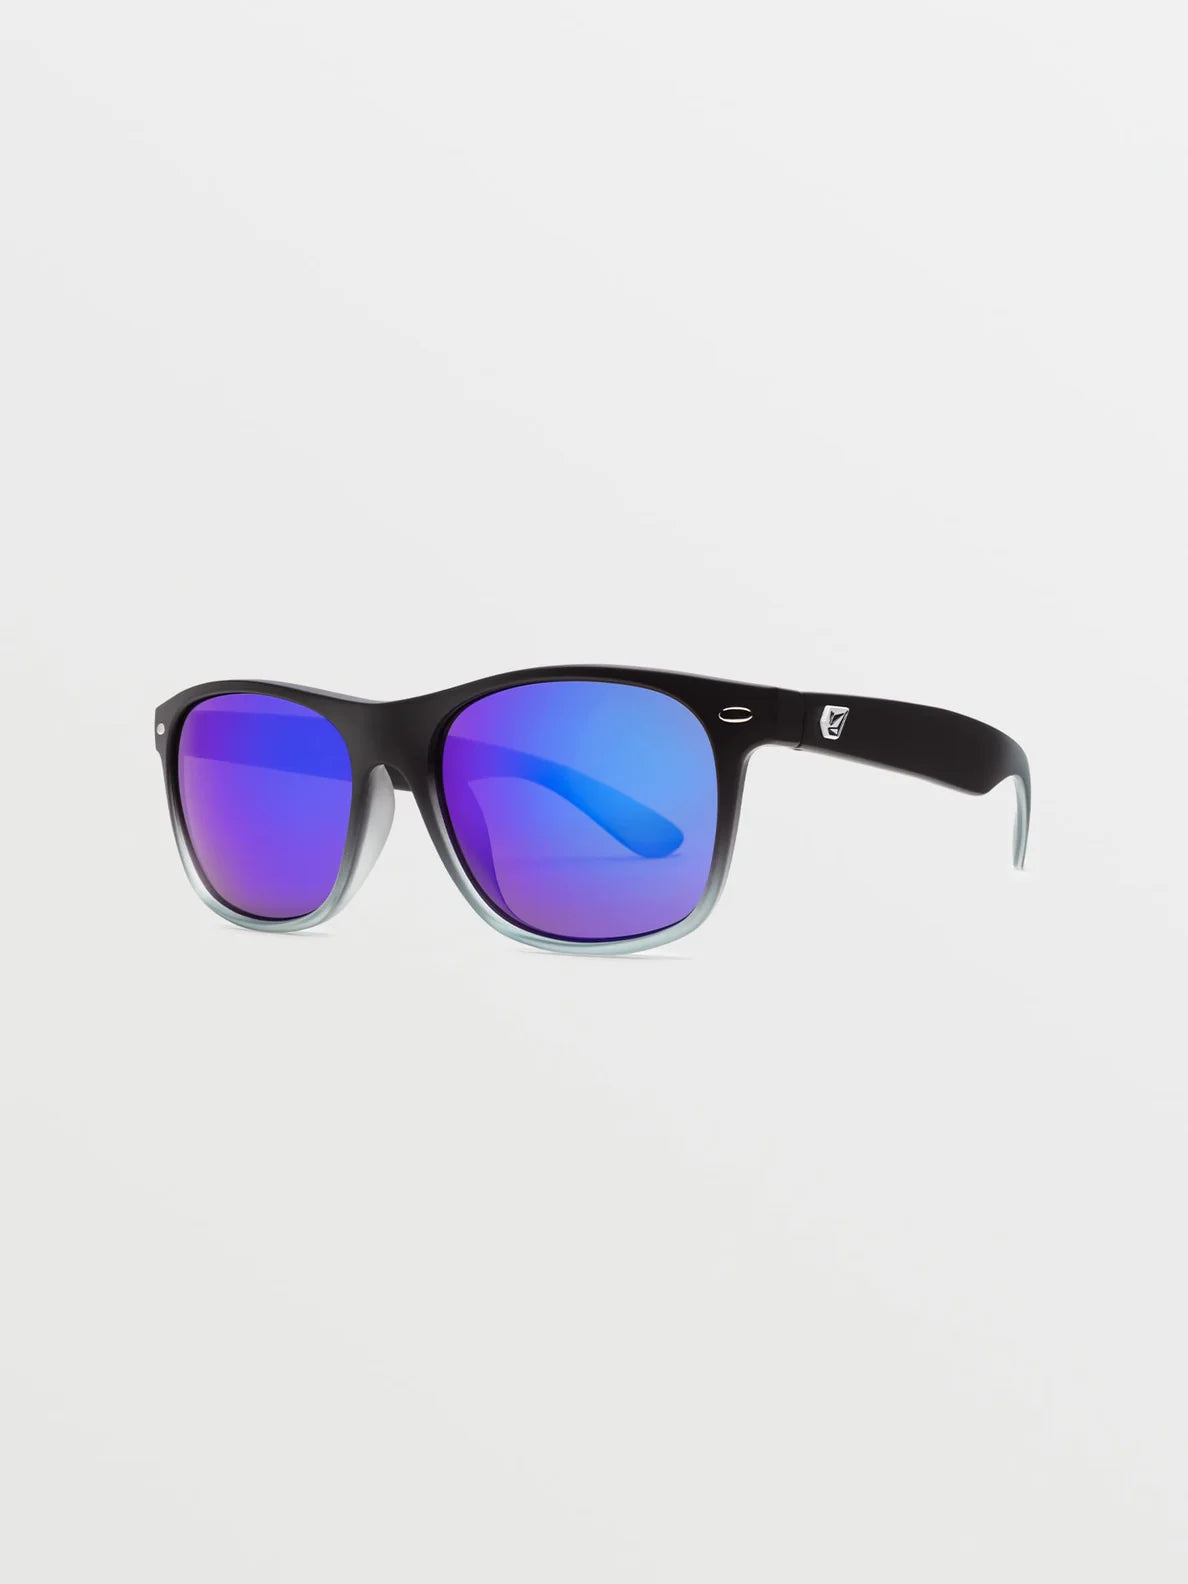 Volcom Fourty6 Matte Black Clear Fade/Gray Blue Mirror | Gafas de sol | Volcom Shop | surfdevils.com